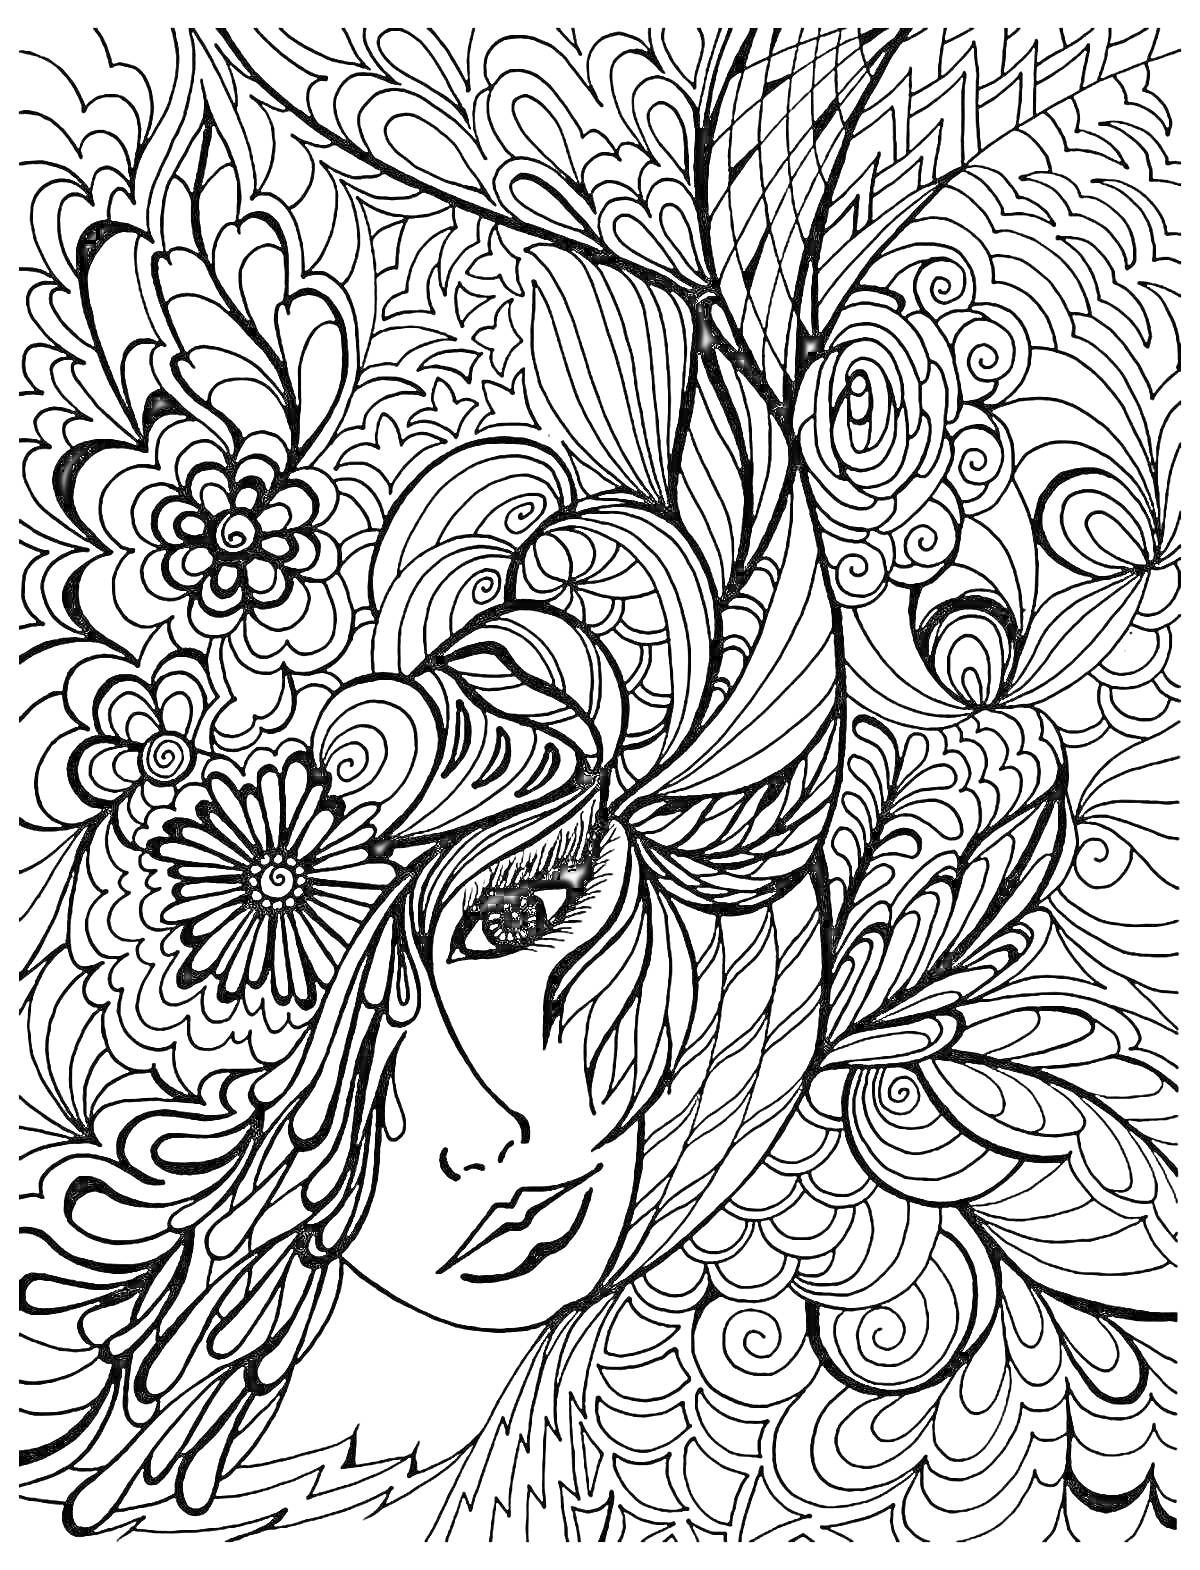 Раскраска Женский портрет среди цветов и листьев